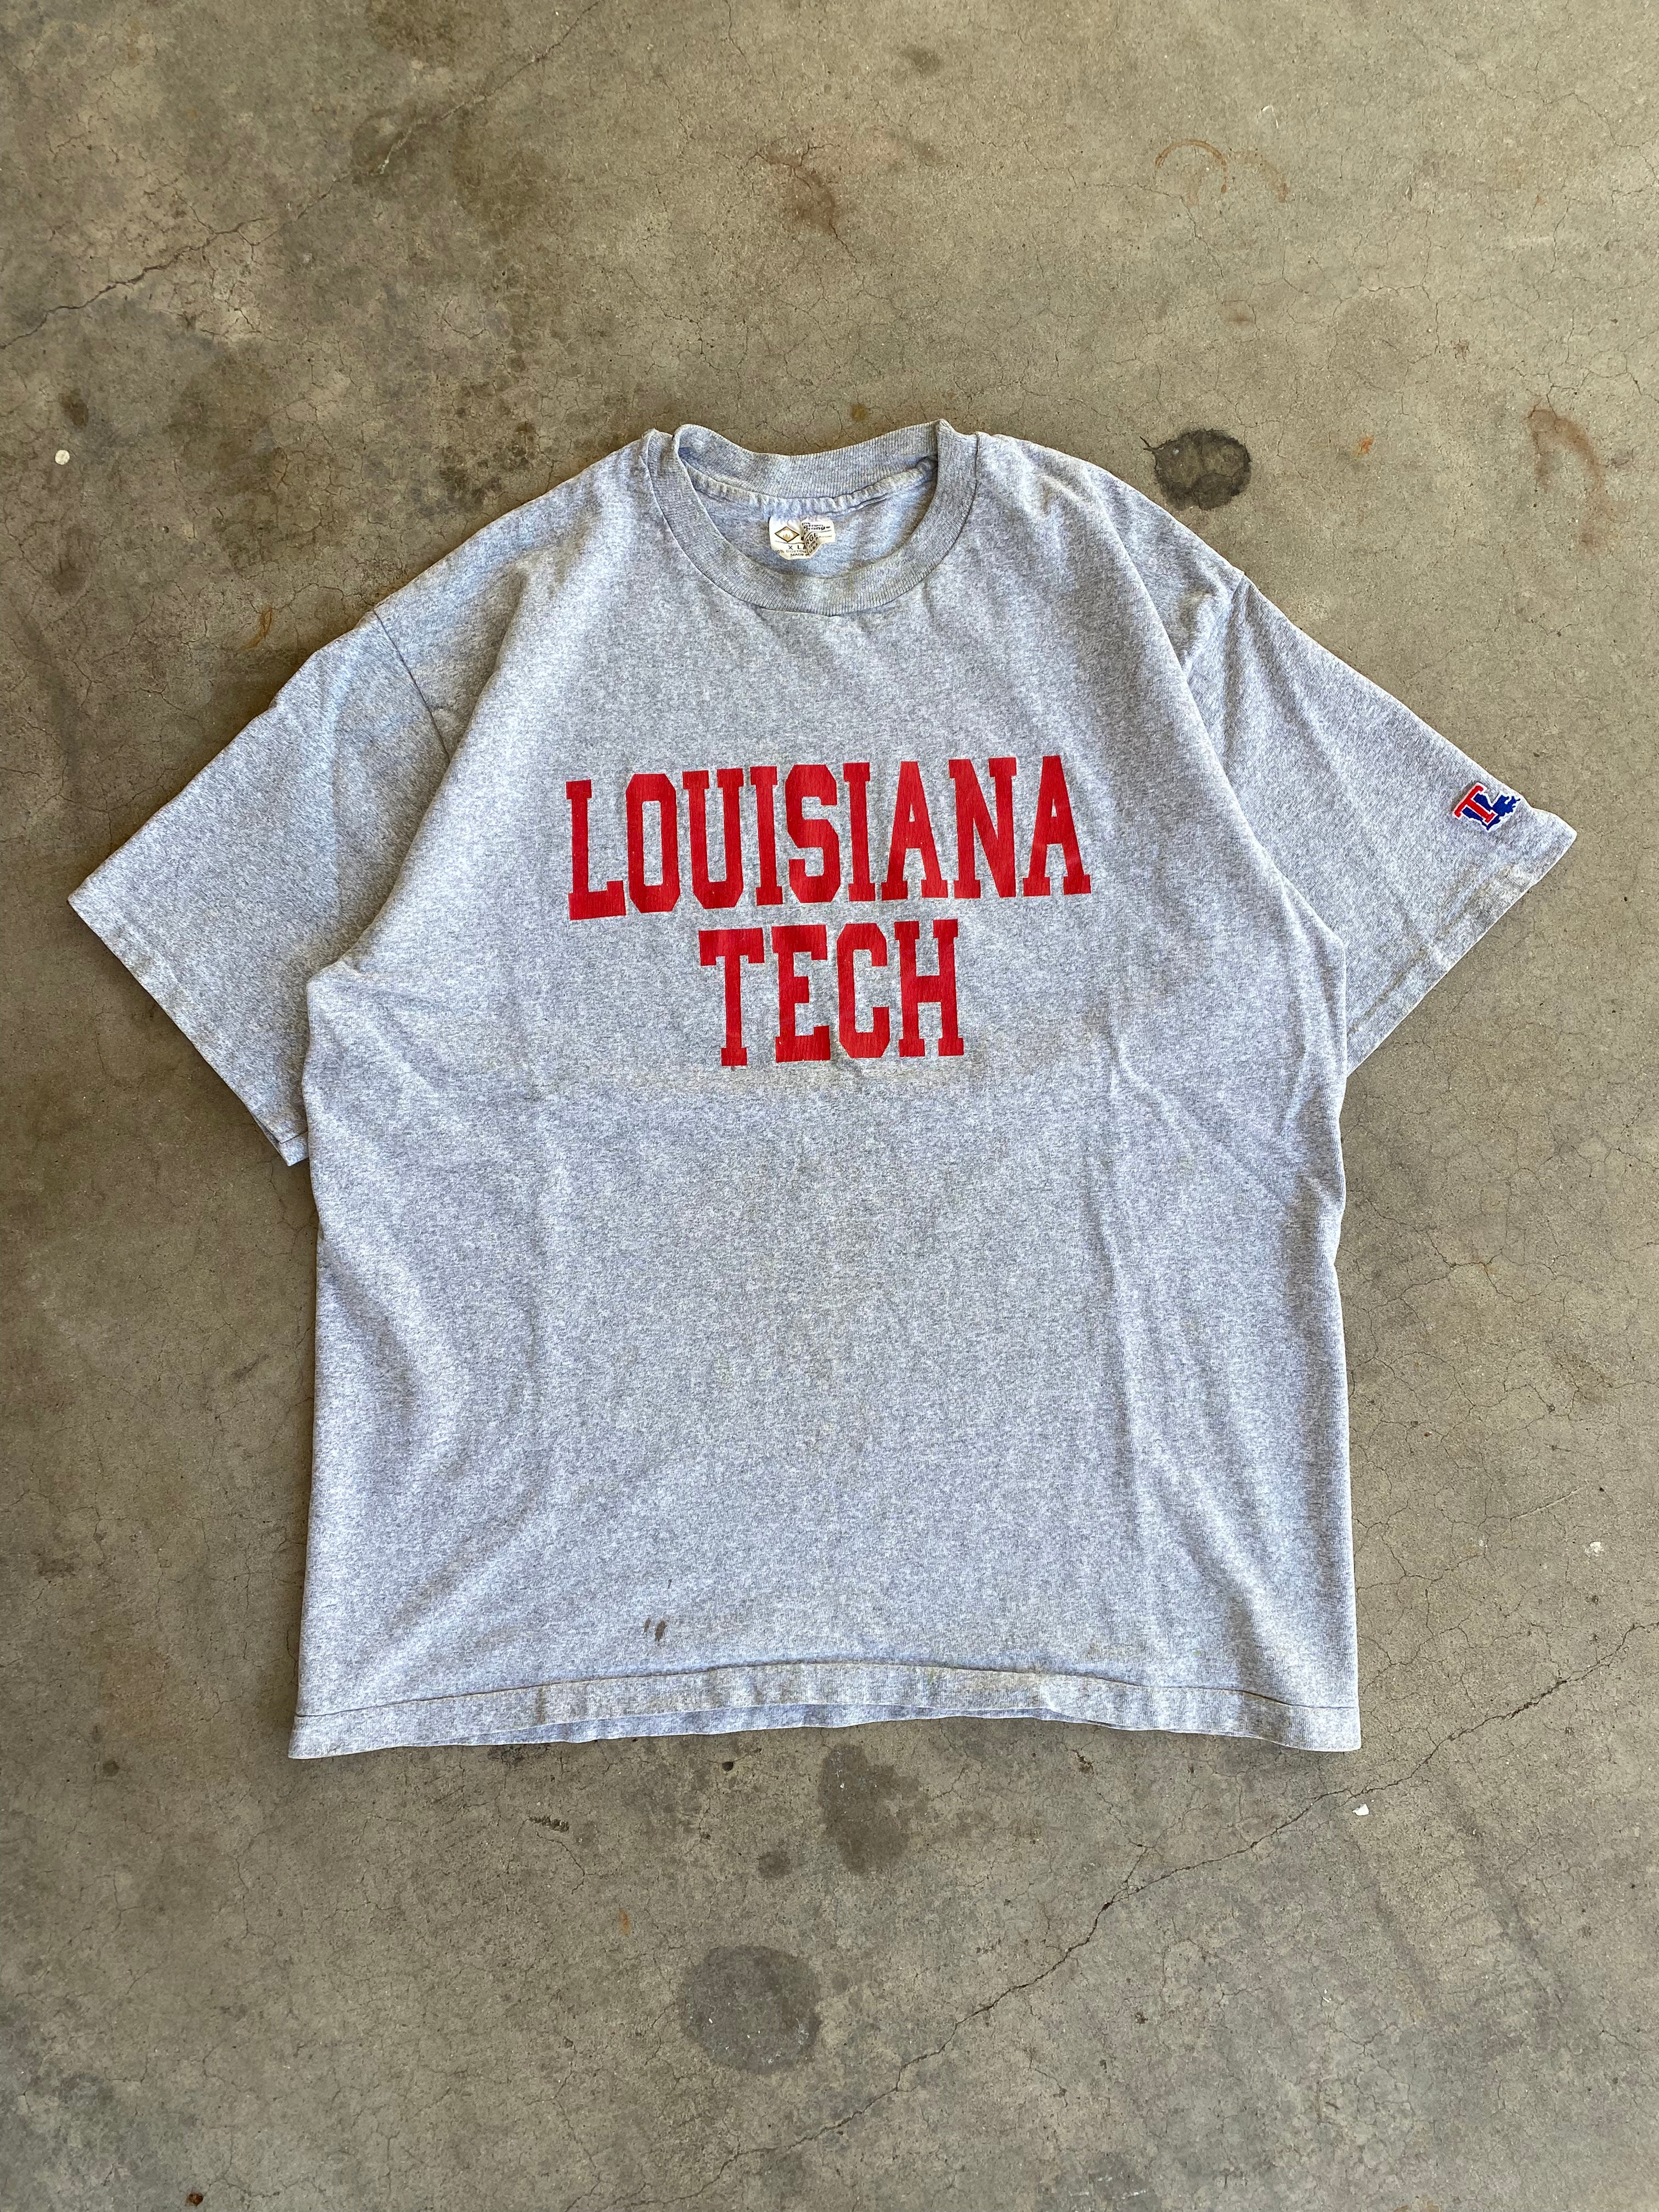 1990s Louisiana Tech T-Shirt (XL)